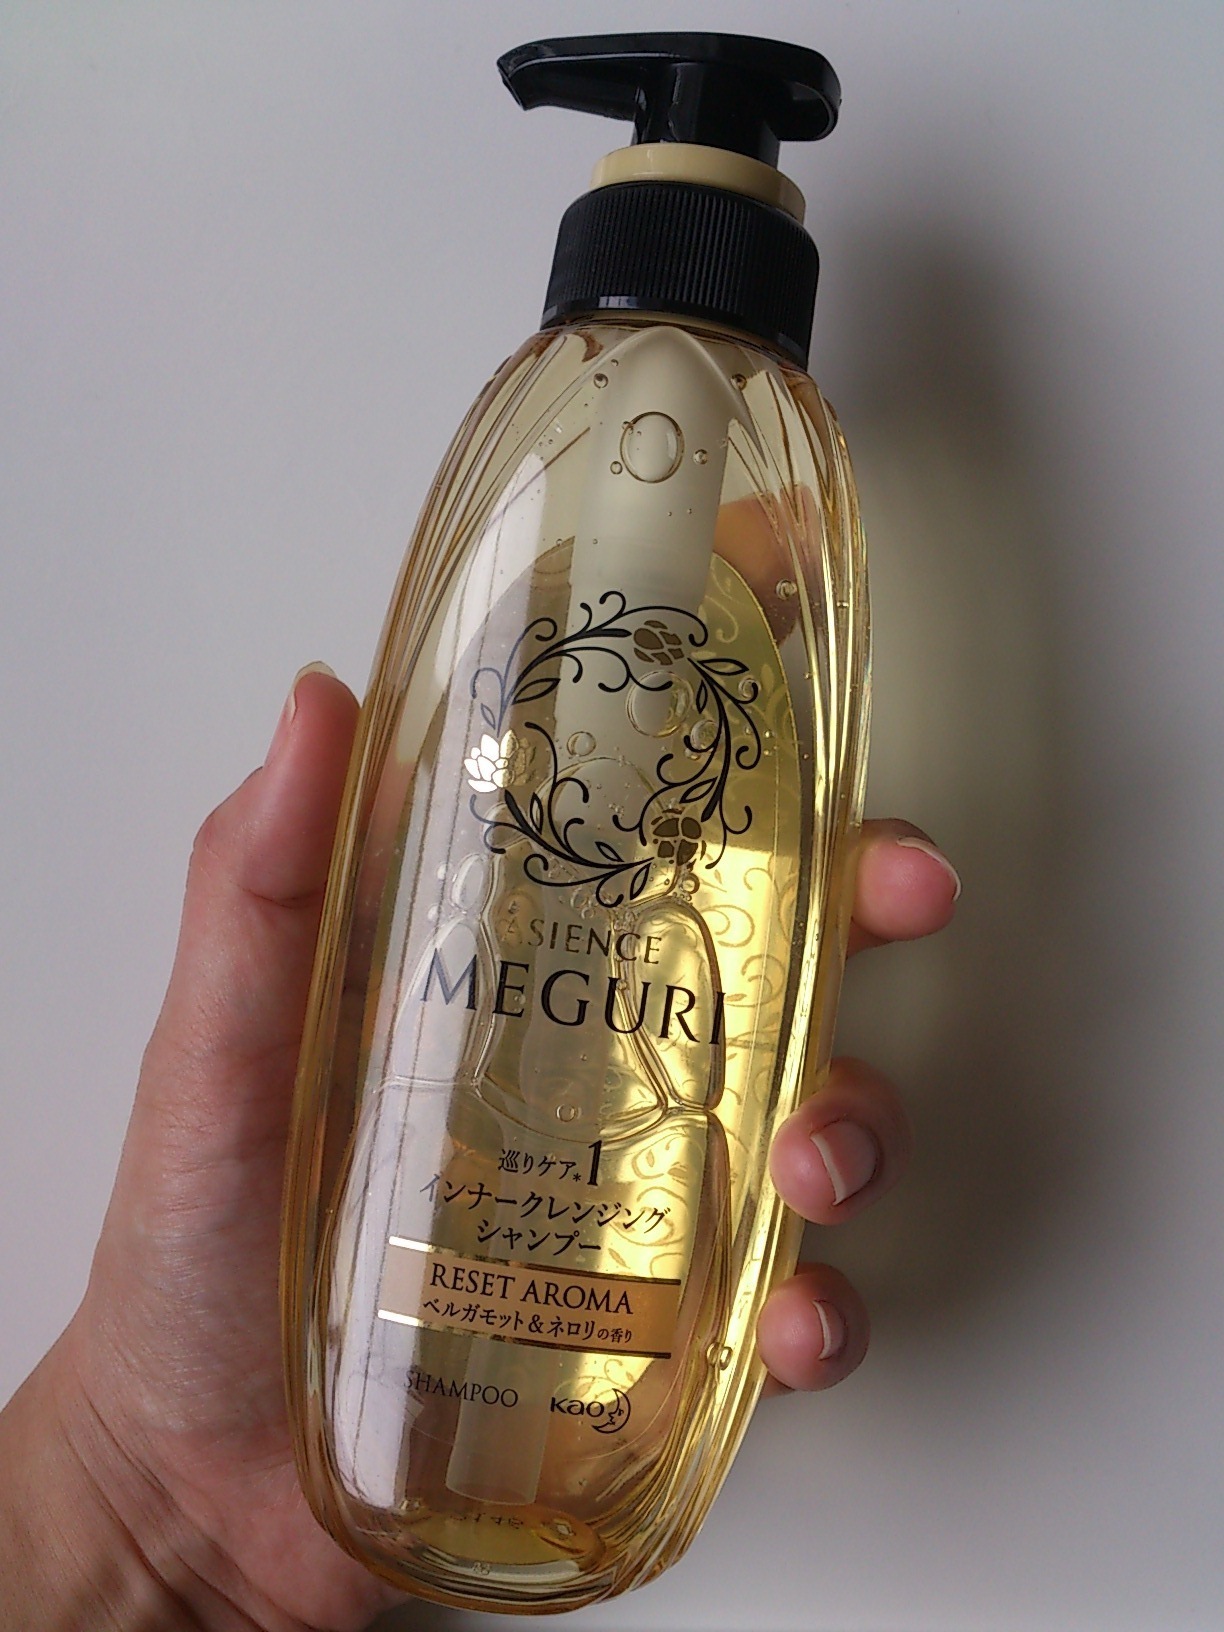 アジエンス Asience Meguri インナークレンジングシャンプー ベルガモット ネロリの香りの口コミ写真 By Mmmmm5さん 3枚目 美容 化粧品情報はアットコスメ